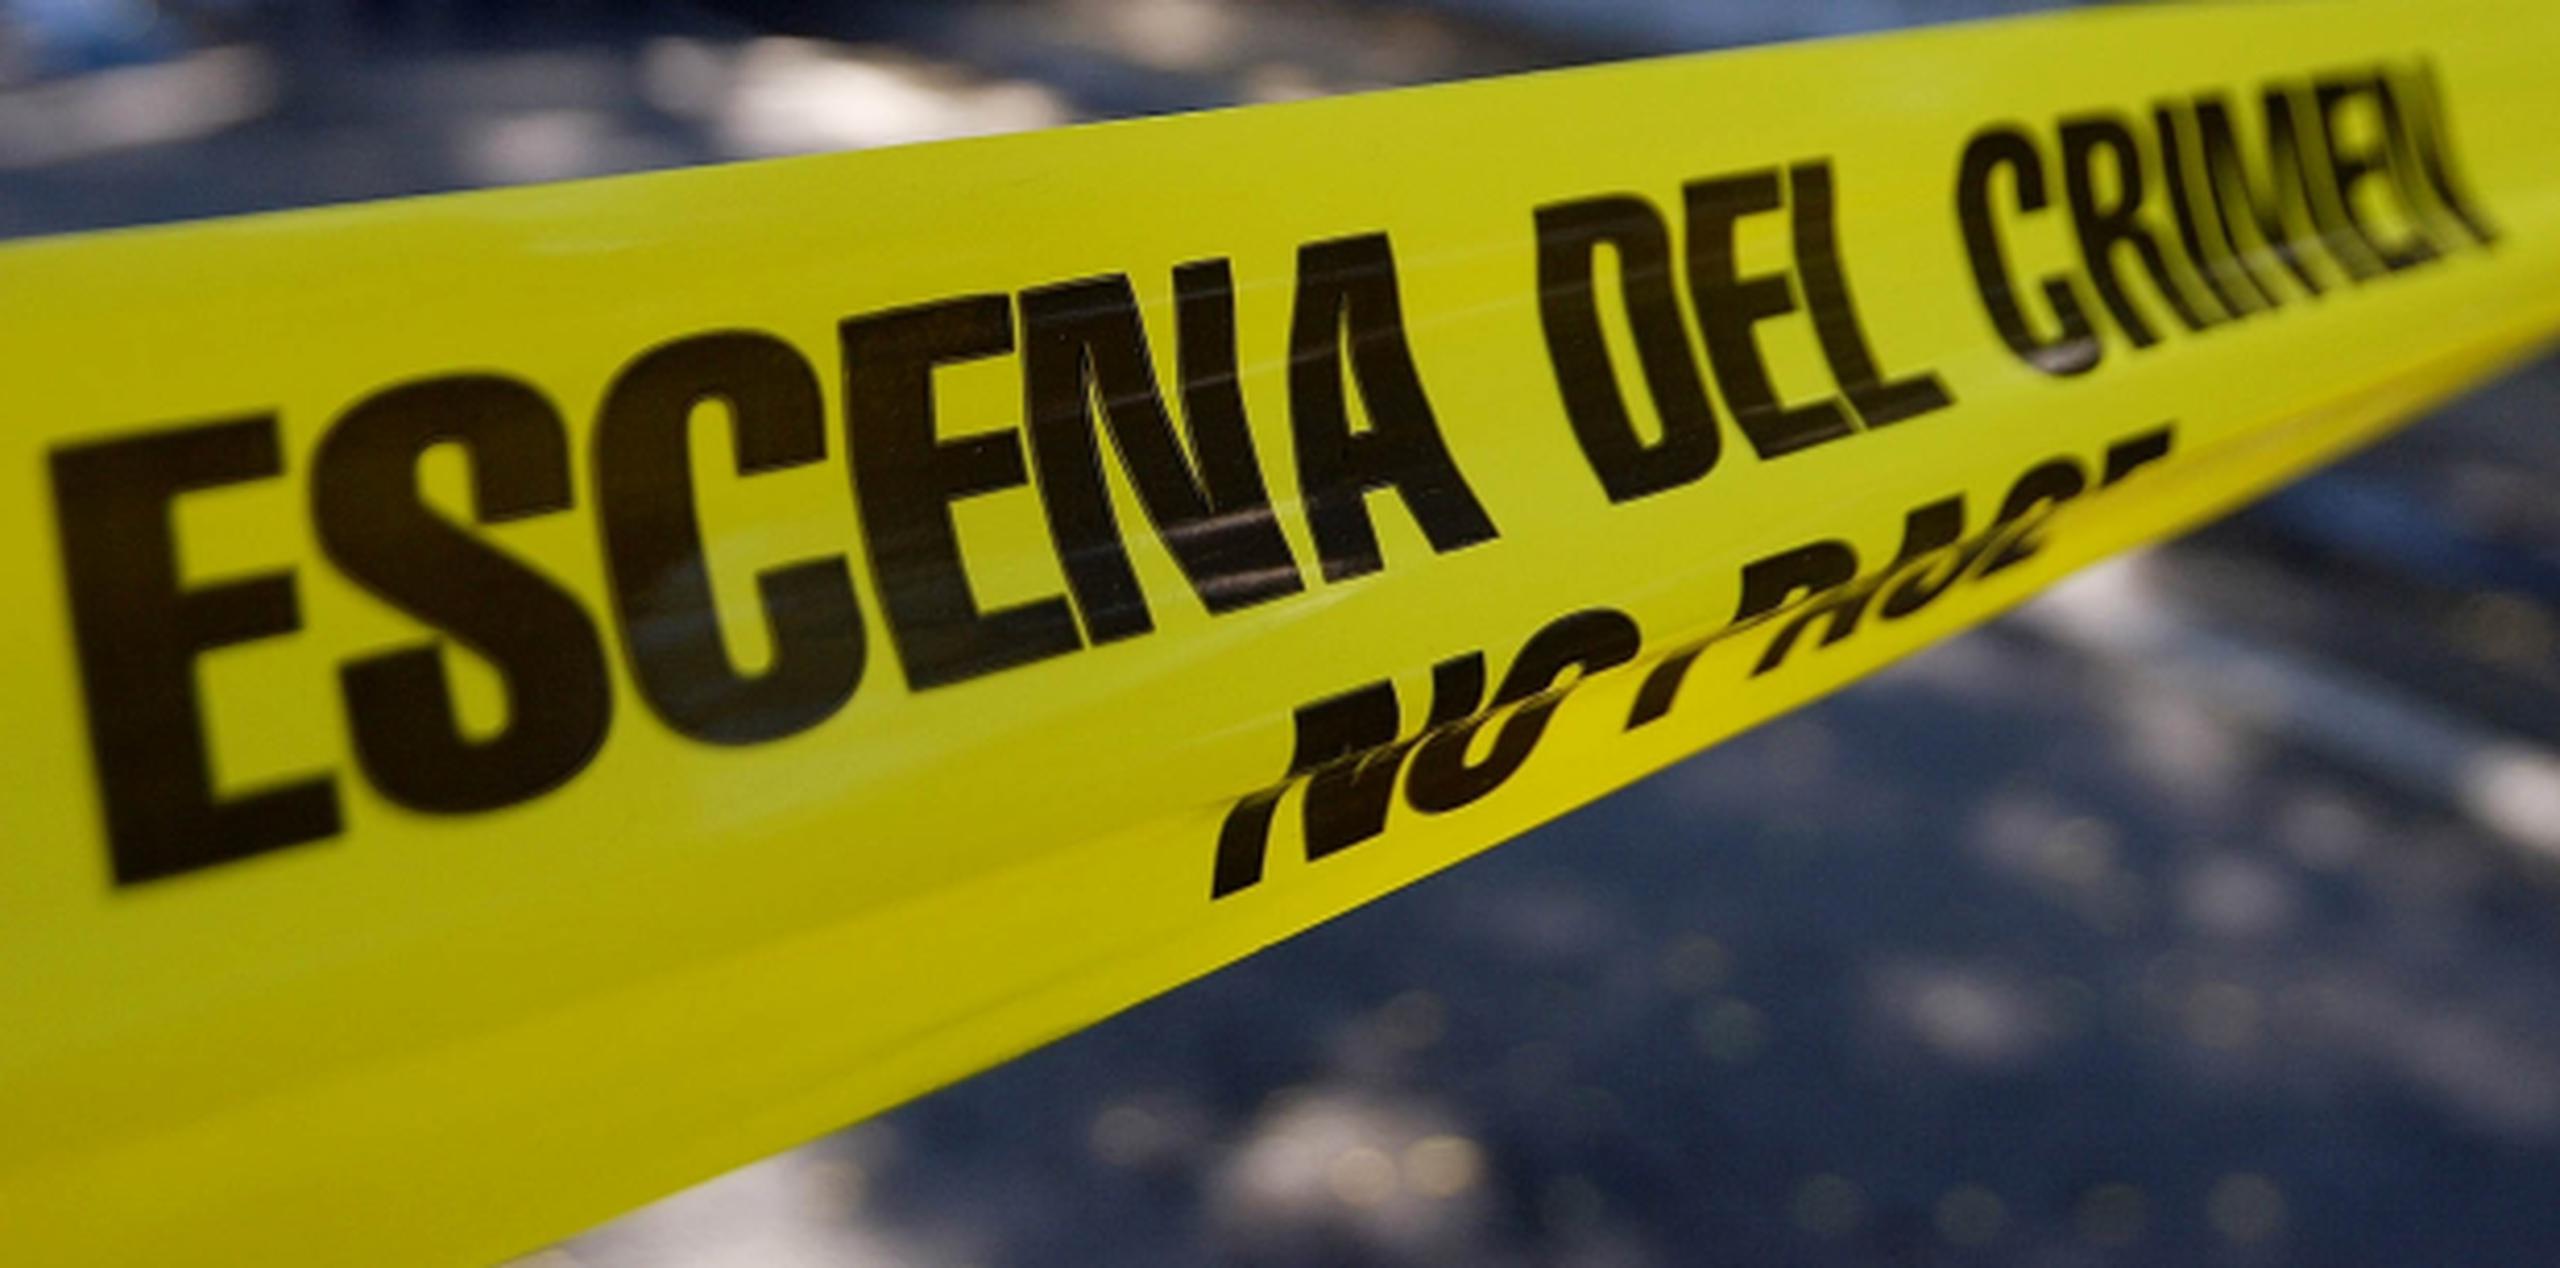 El escenario del doble asesinato más reciente fue la barriada Bitumul, en Hato Rey